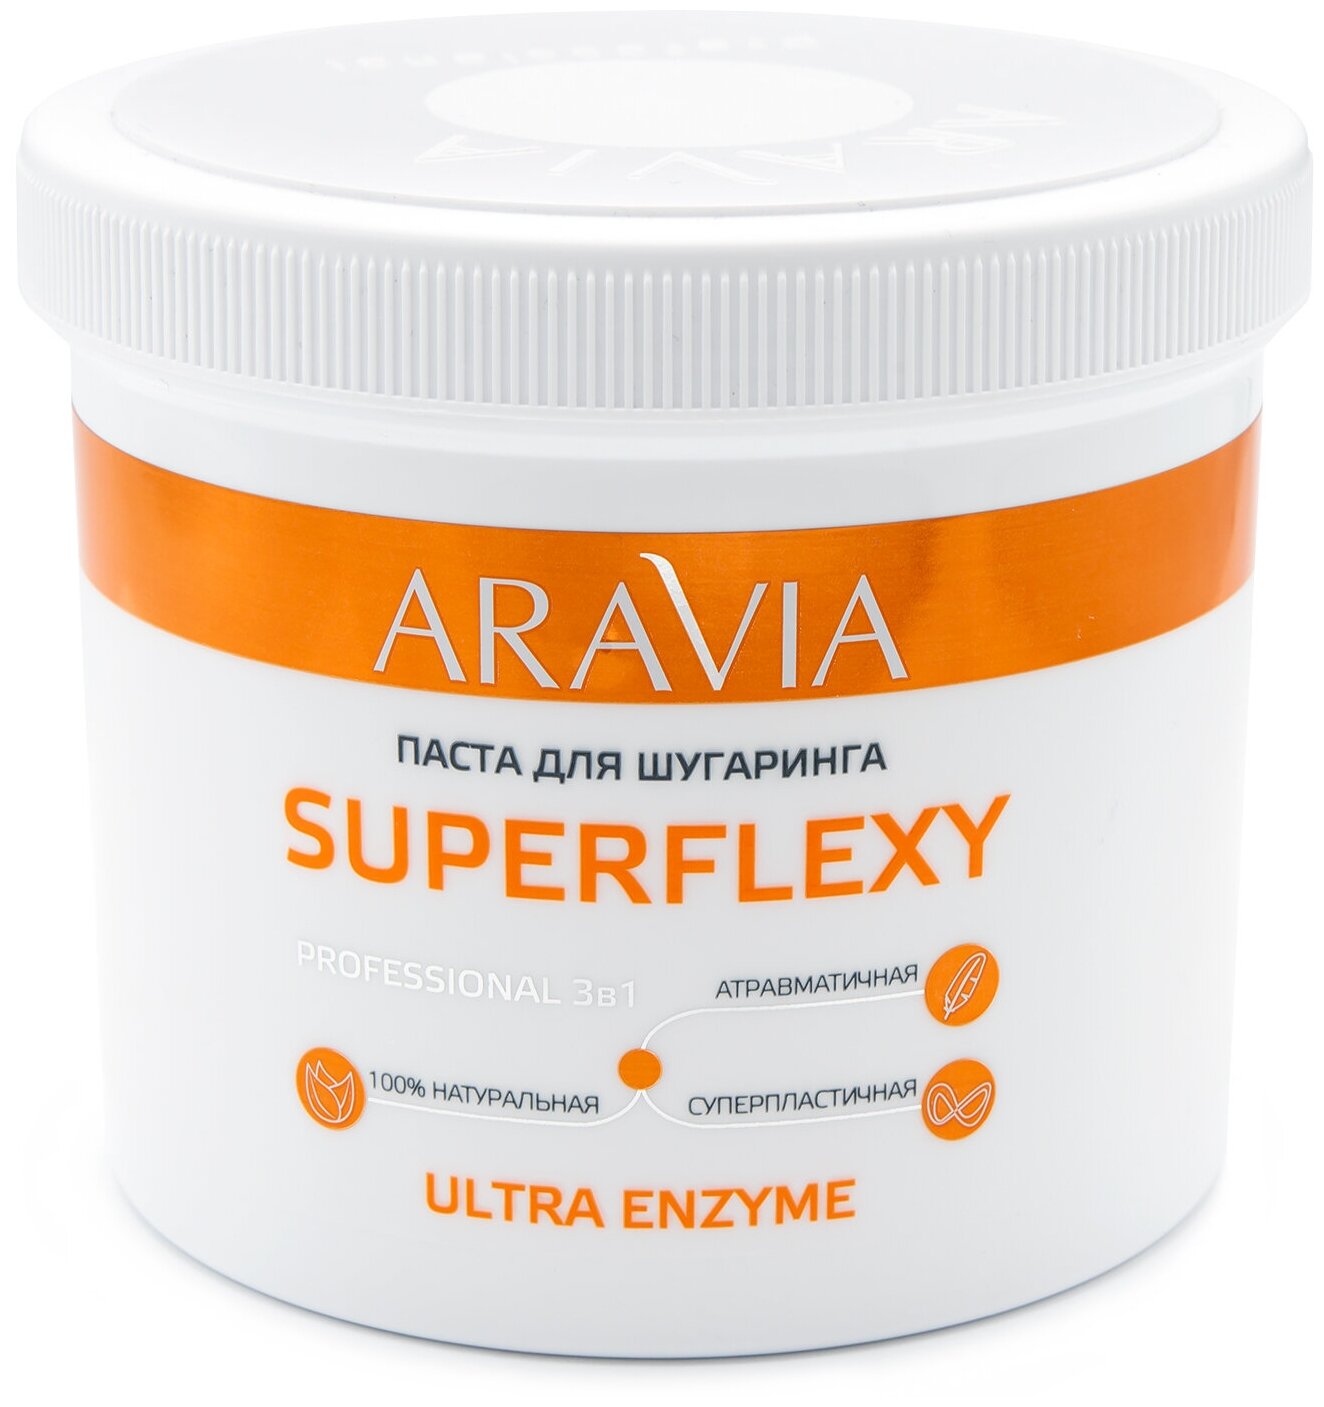 Сахарная паста для шугаринга мягкая Aravia Superflexy Ultra Enzyme 750 г